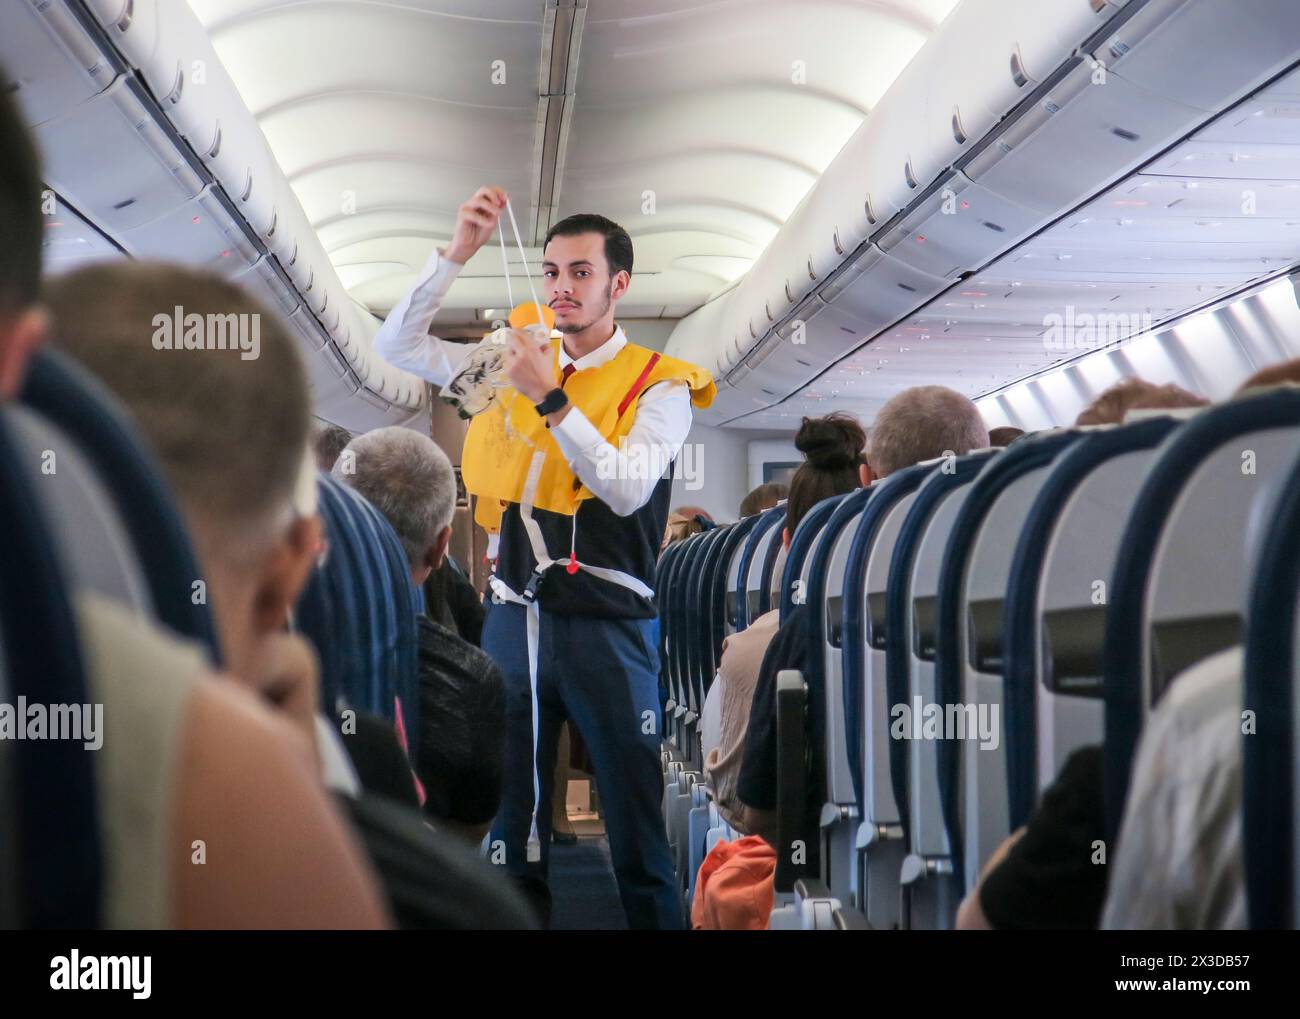 Flugzeug innen, Economy Class, Flugbegleiter erläutert die Sicherheitsmaßnahmen, Atemmaske - NO MODEL RELEASE! Stock Photo